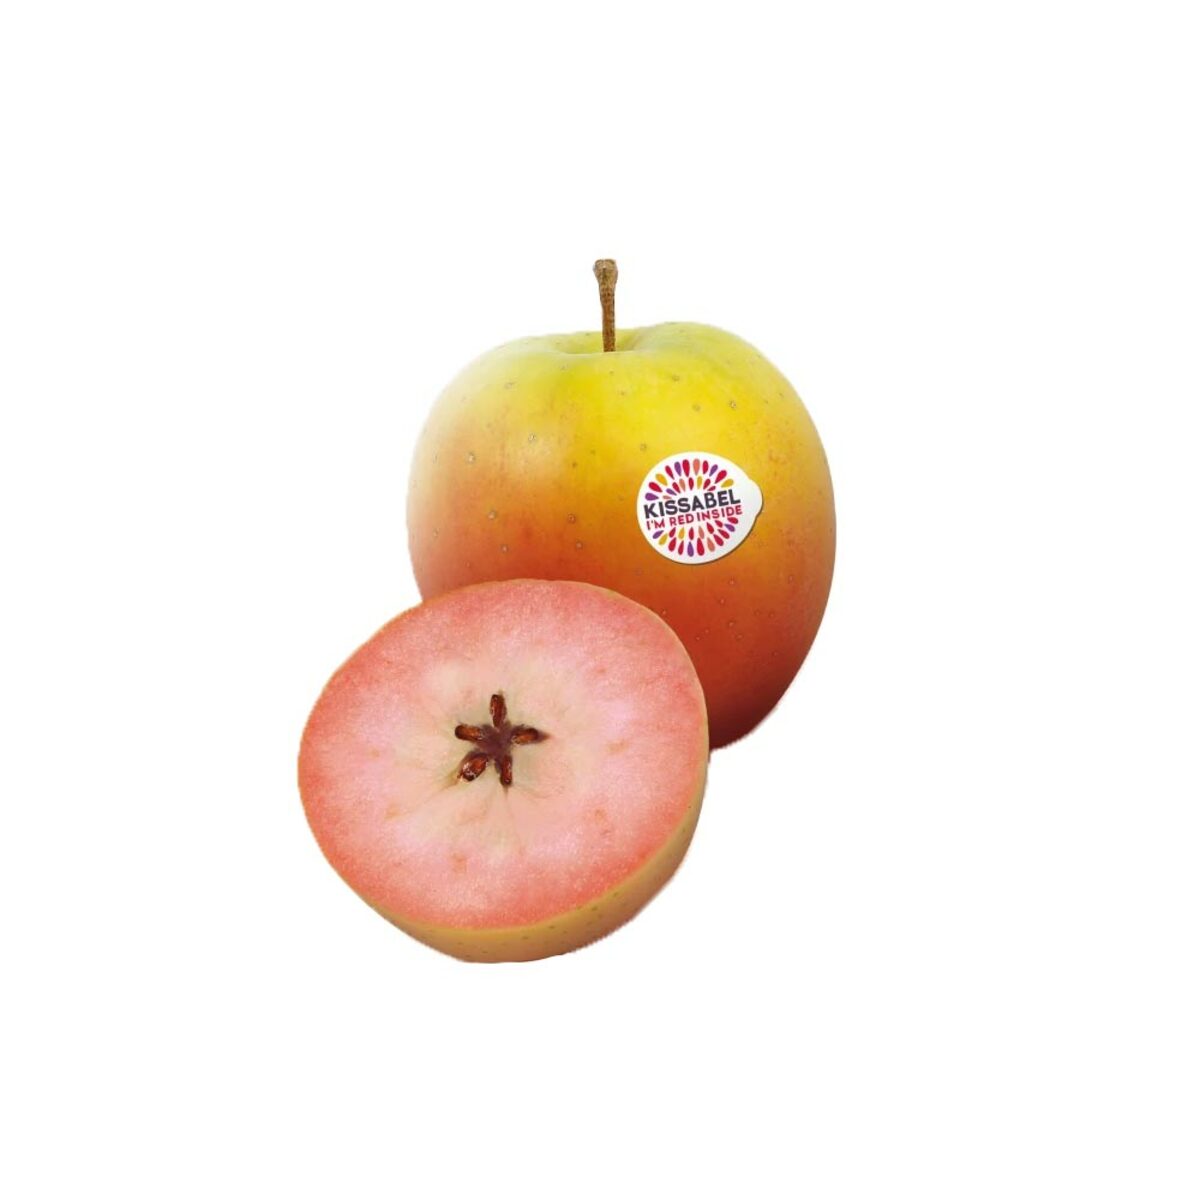 Apple Kissabel France 1 kg